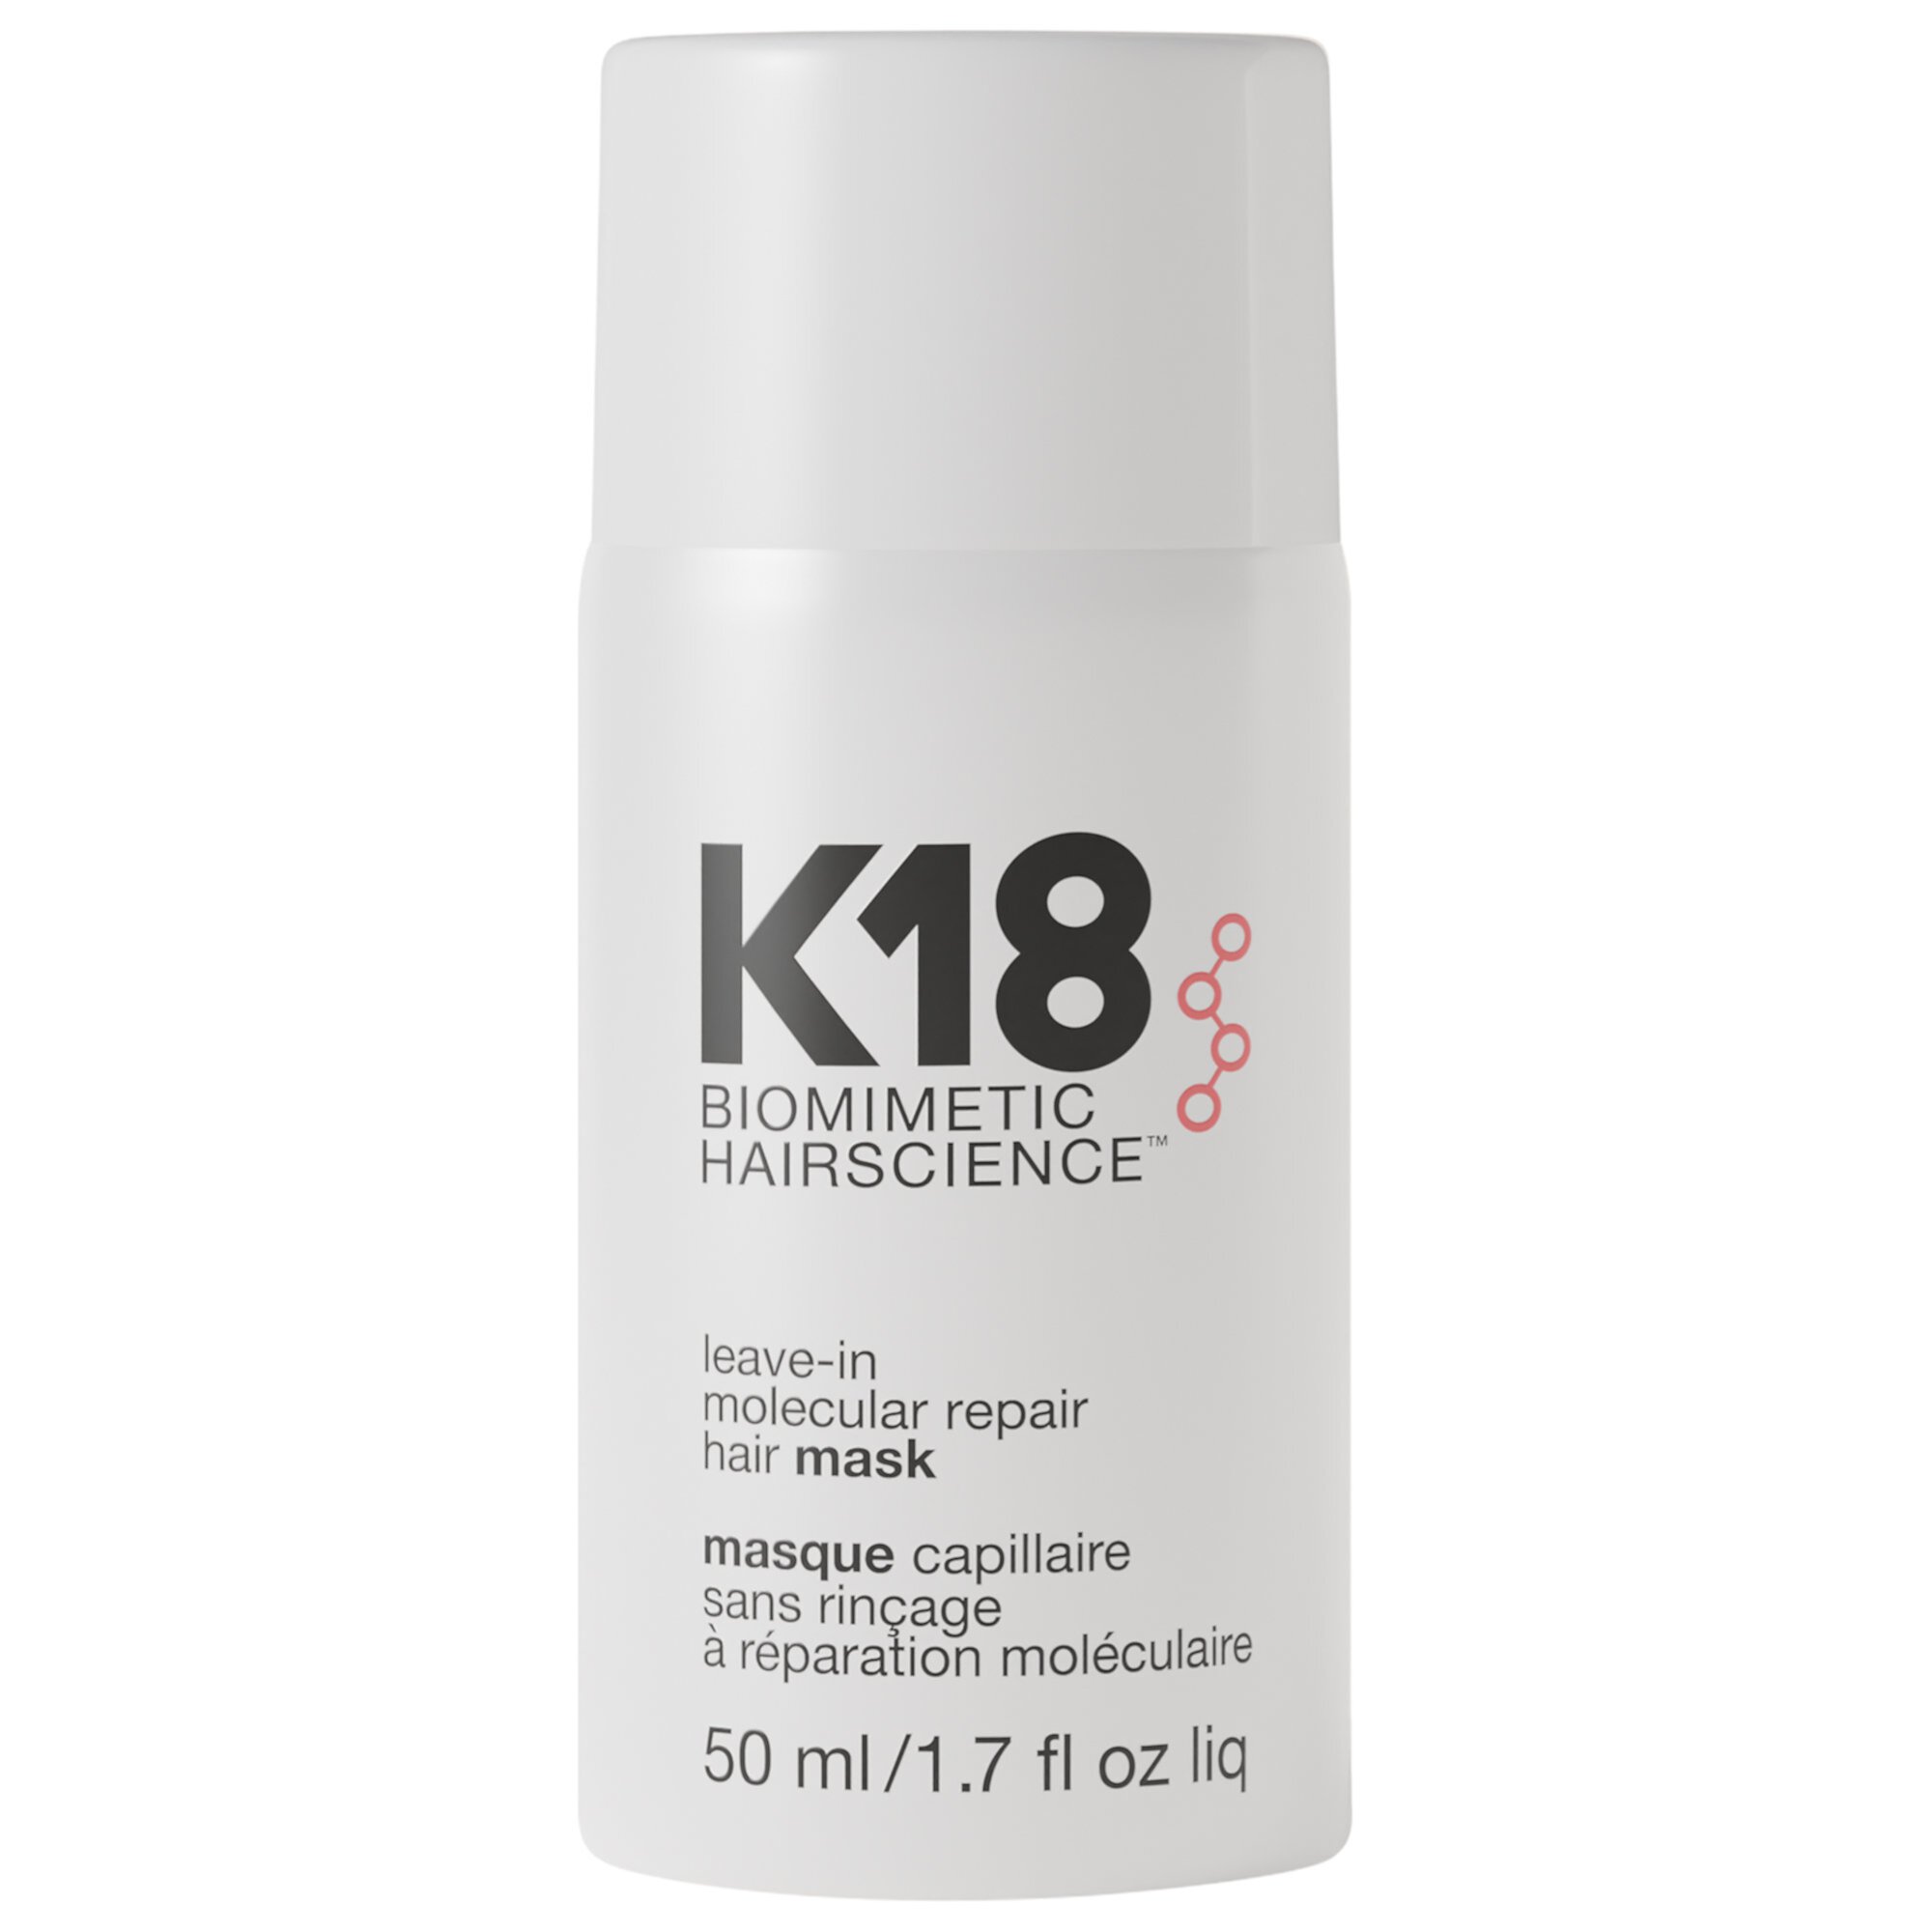 Несмываемая молекулярная восстанавливающая маска для волос K18 Biomimetic Hairscience